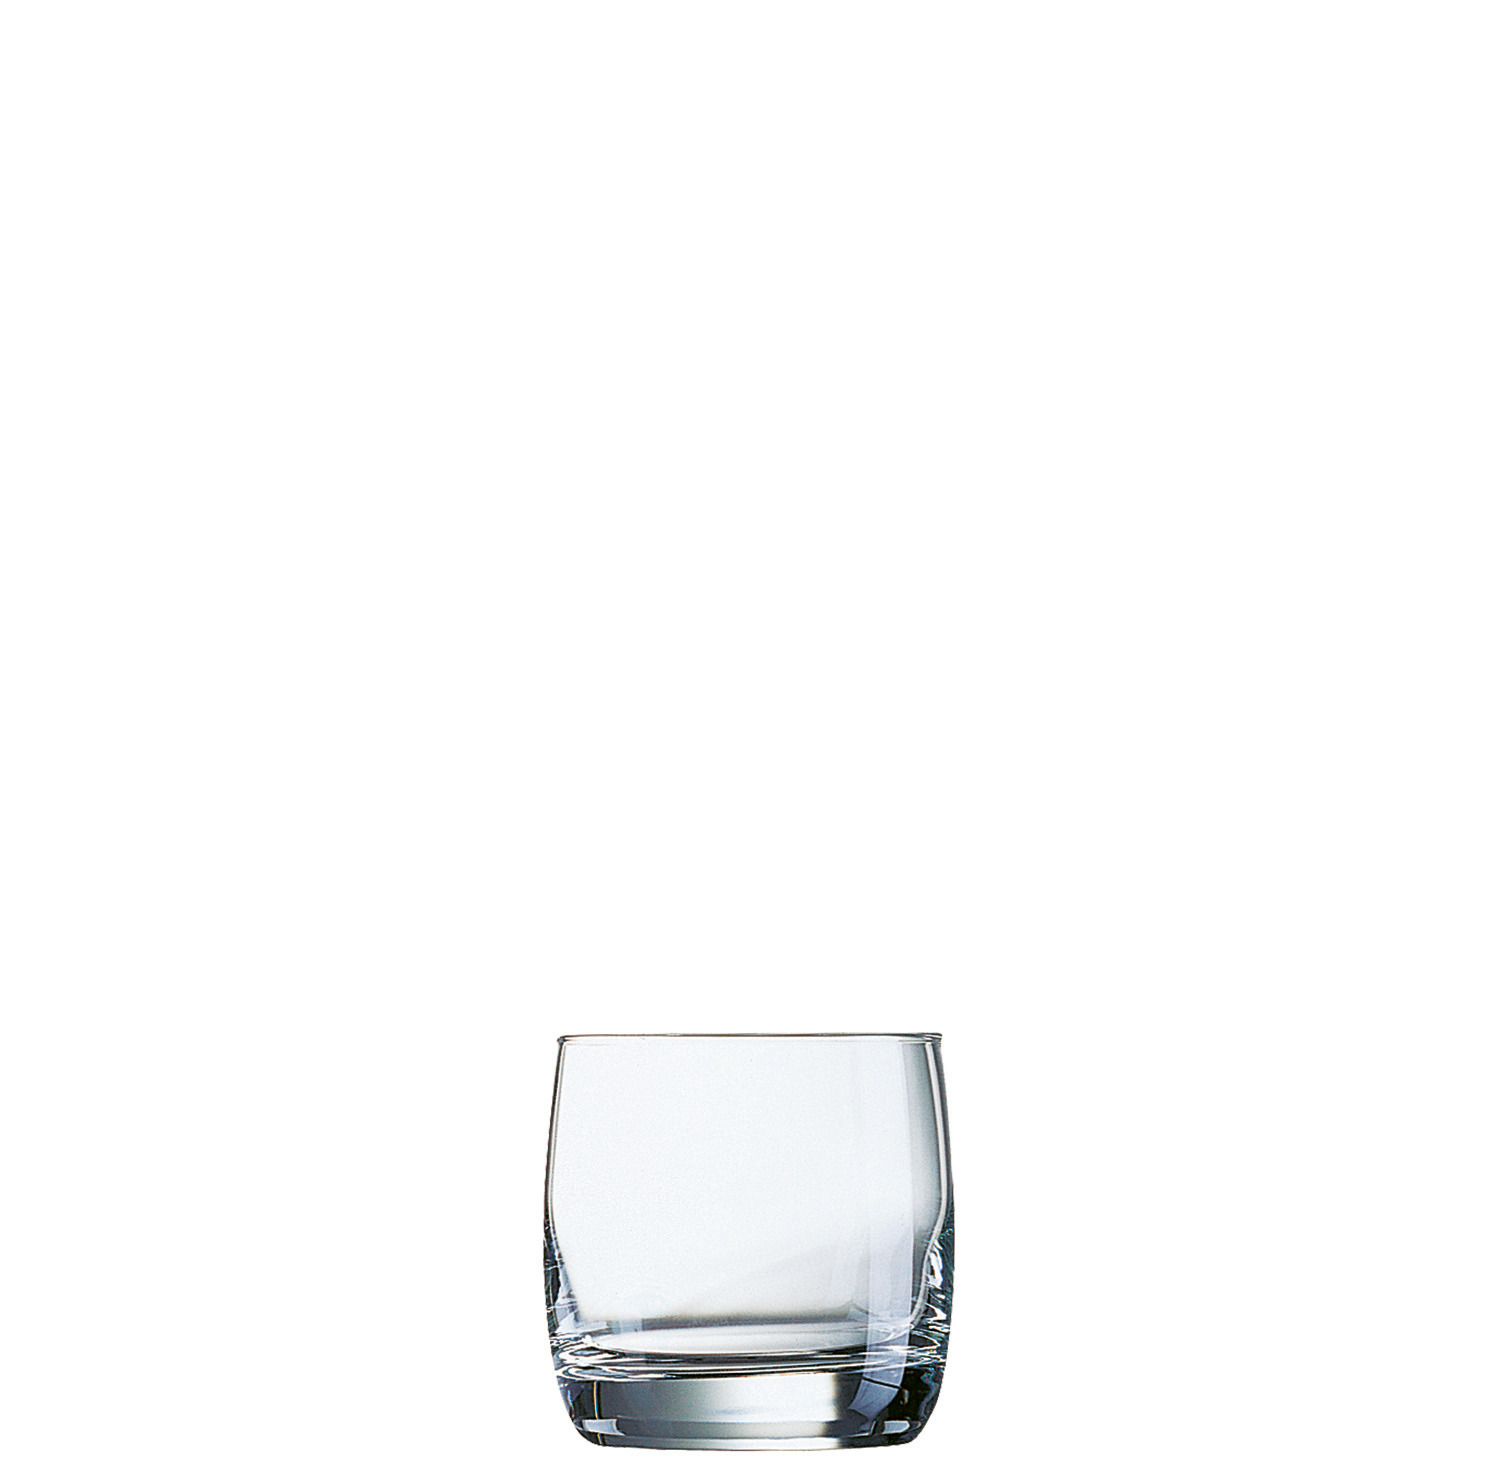 Whiskyglas 84 mm / 0,31 l transparent